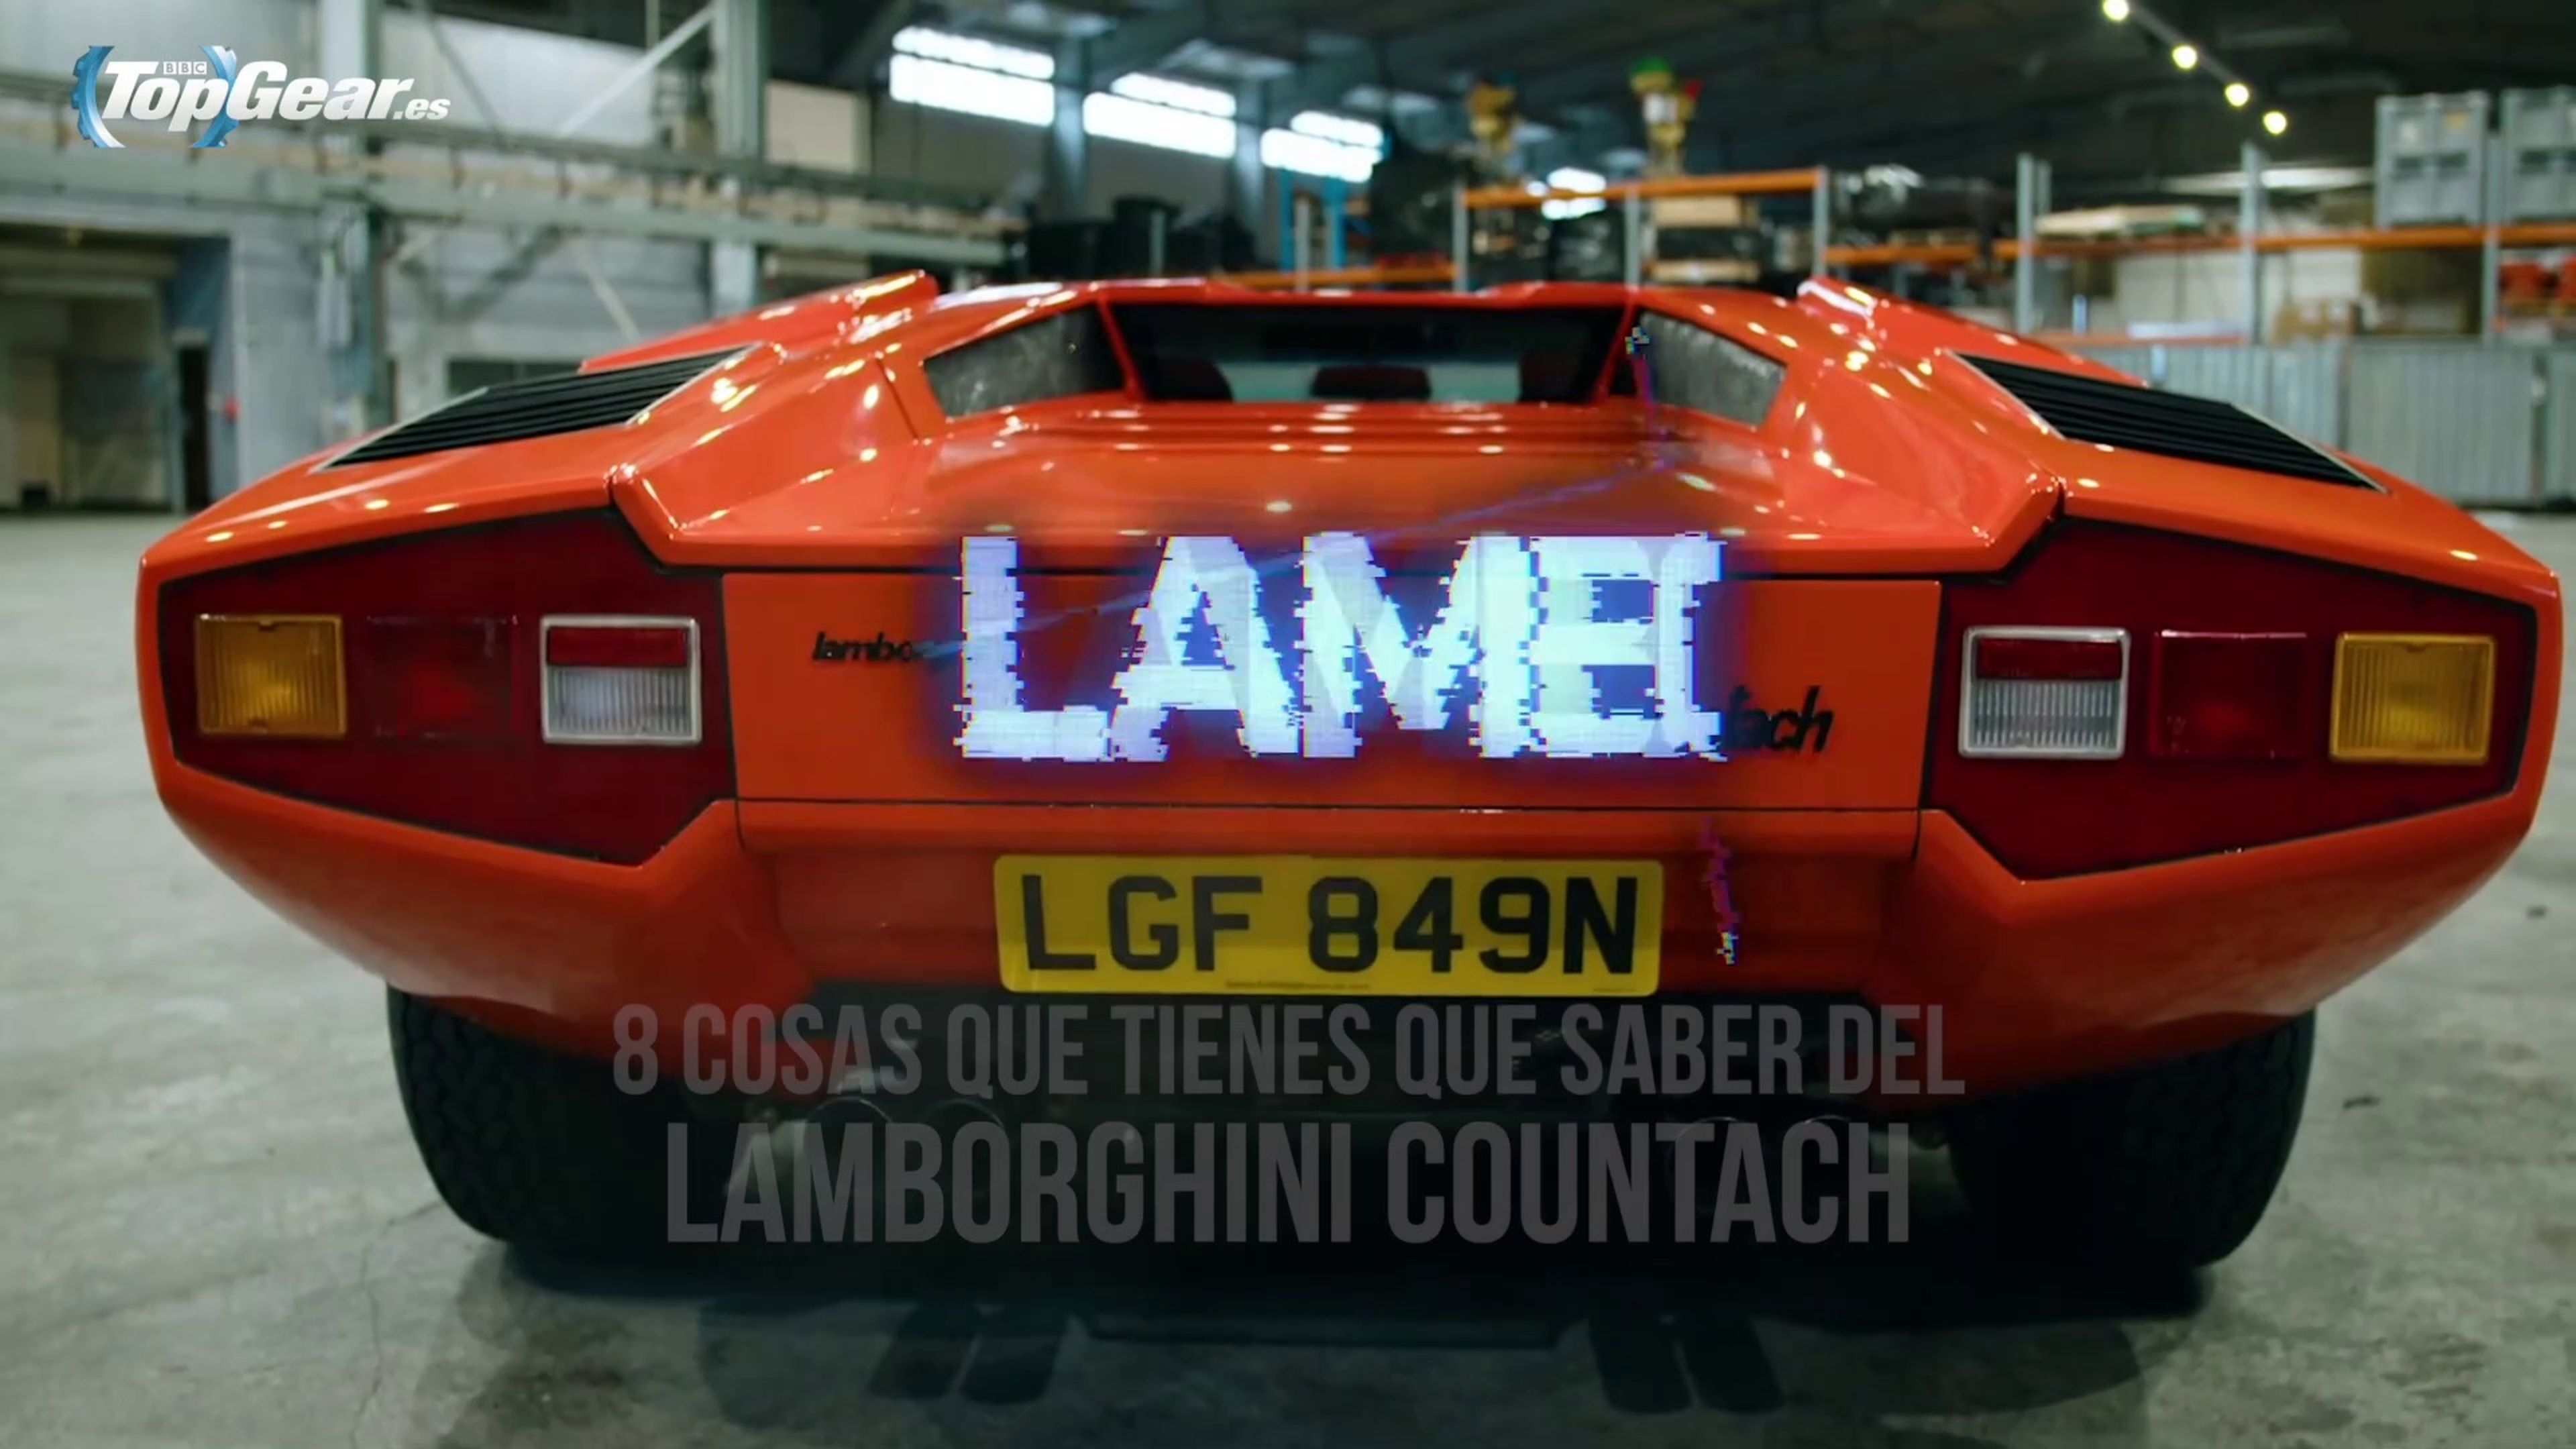 VïDEO: 8 COSAS que tienes que saber del Lamborghini Countach